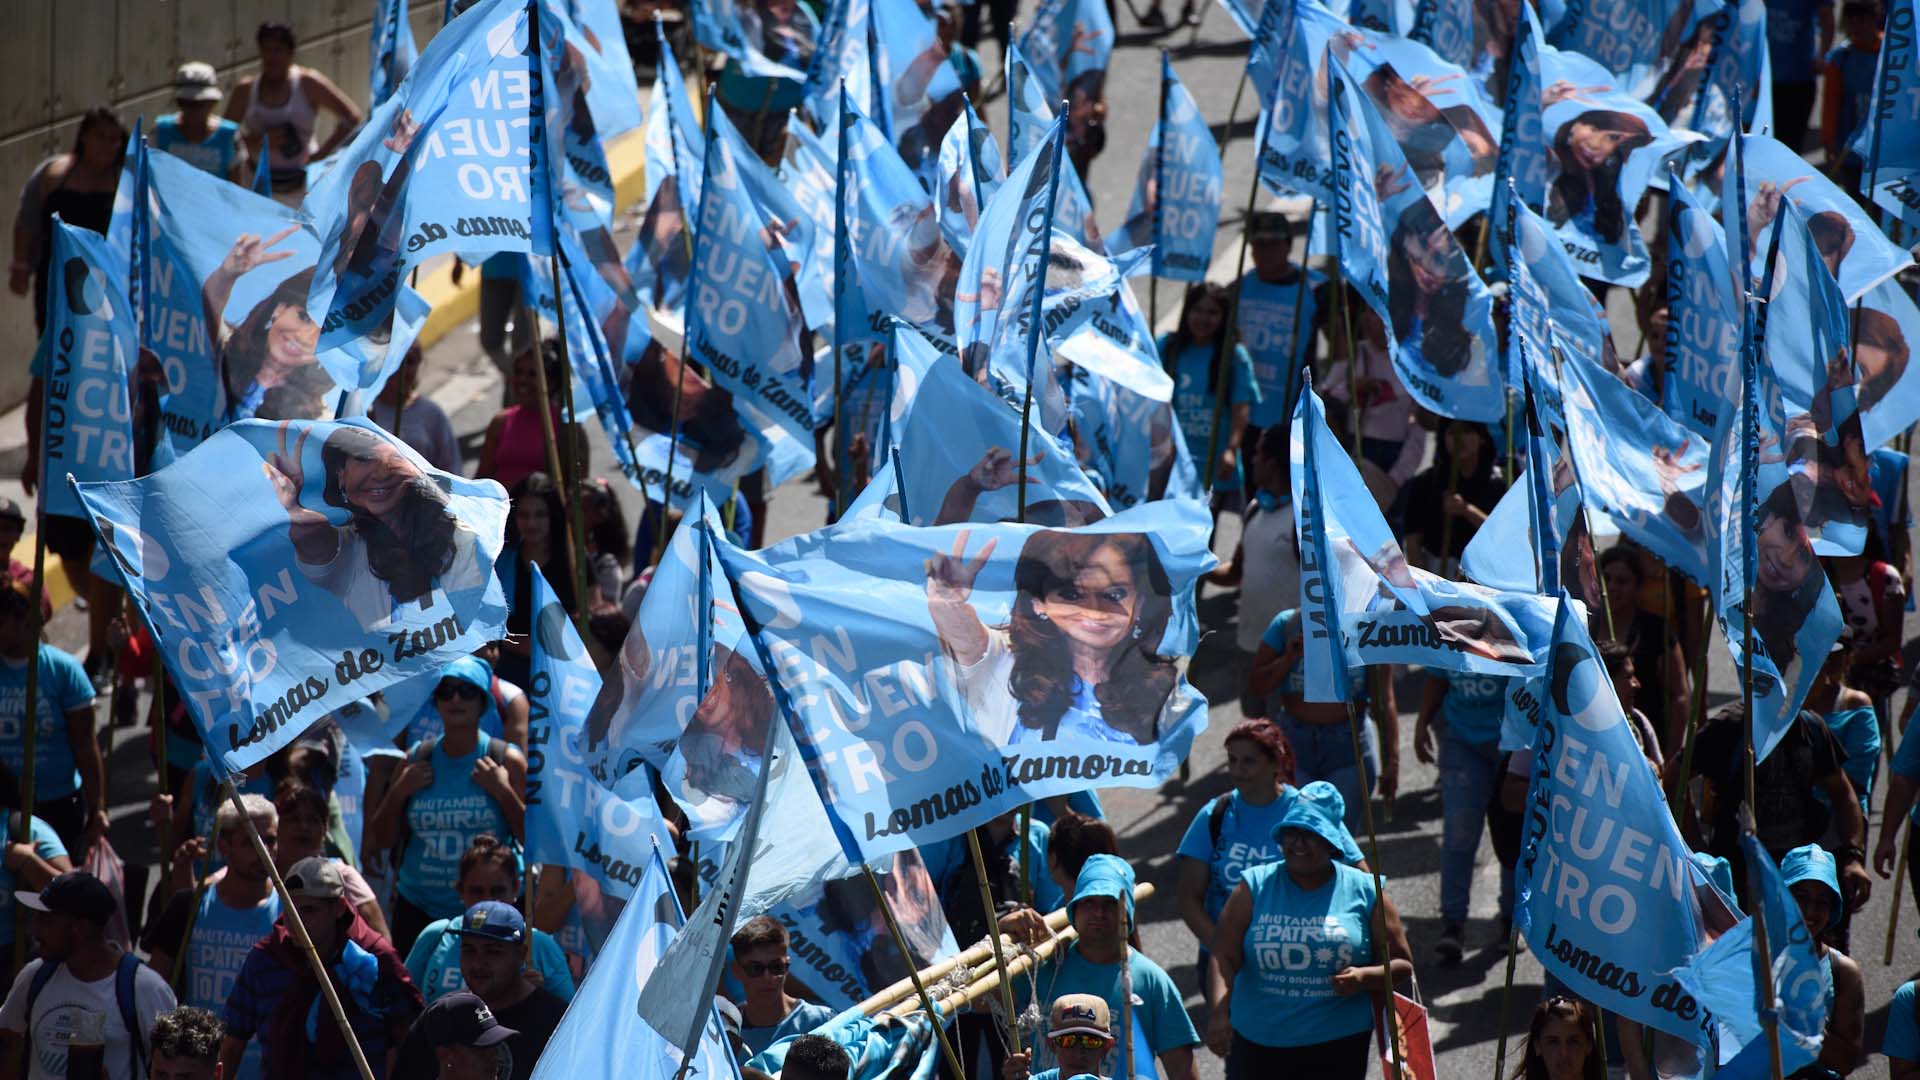 La militancia kirchnerista en el marco del operativo clamor para impulsar la candidatura de CFK en las próximas elecciones presidenciales